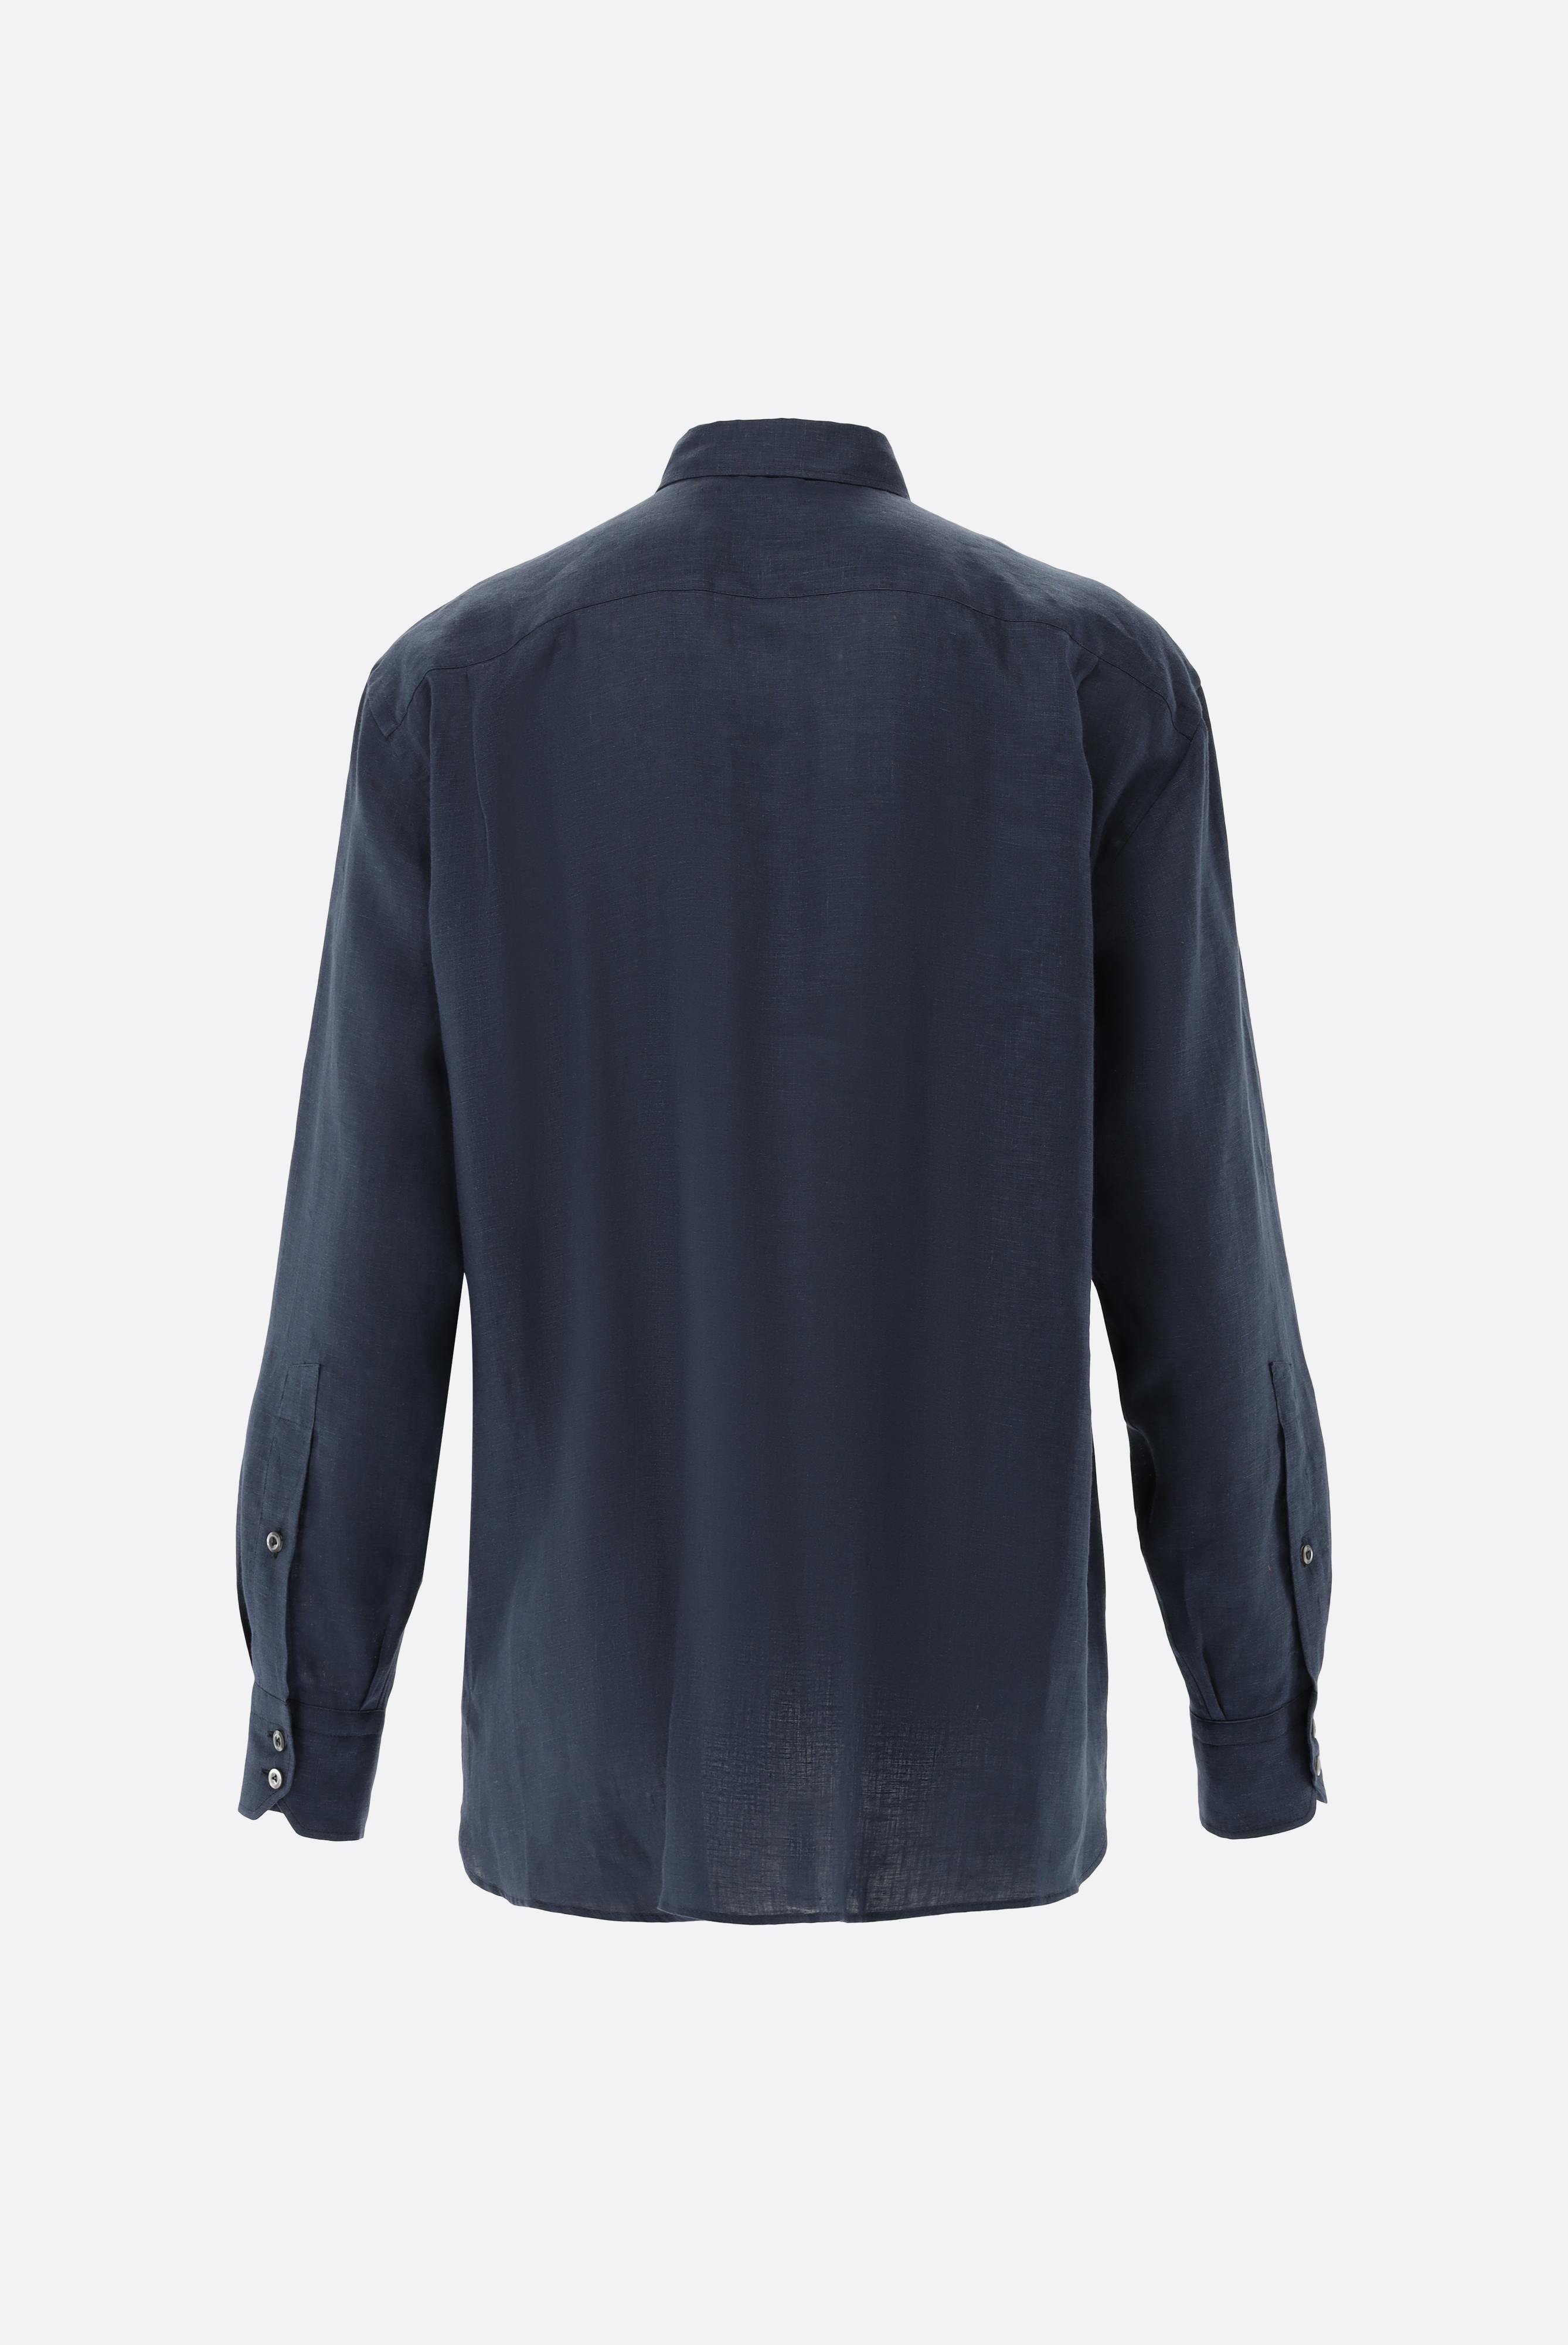 Casual Hemden+Leinenhemd mit Button-Down-Kragen+20.2026.9V.150555.785.39